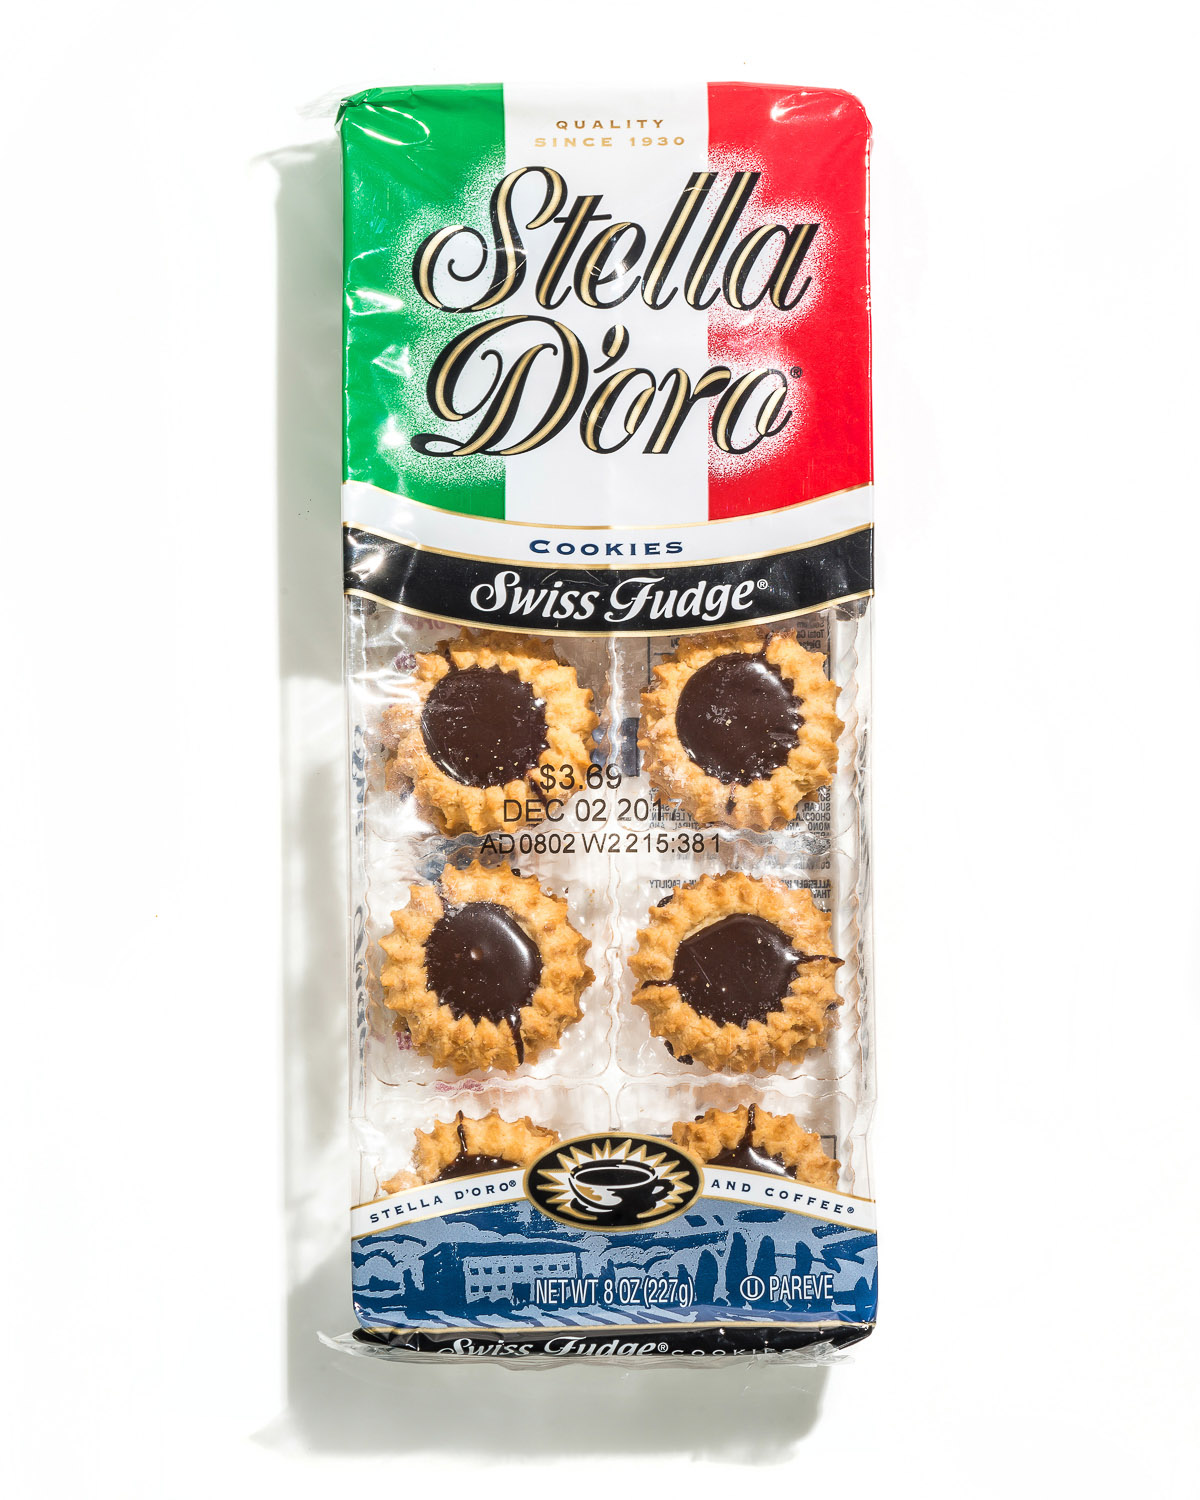 Stella D’Oro Swiss Fudge Cookies